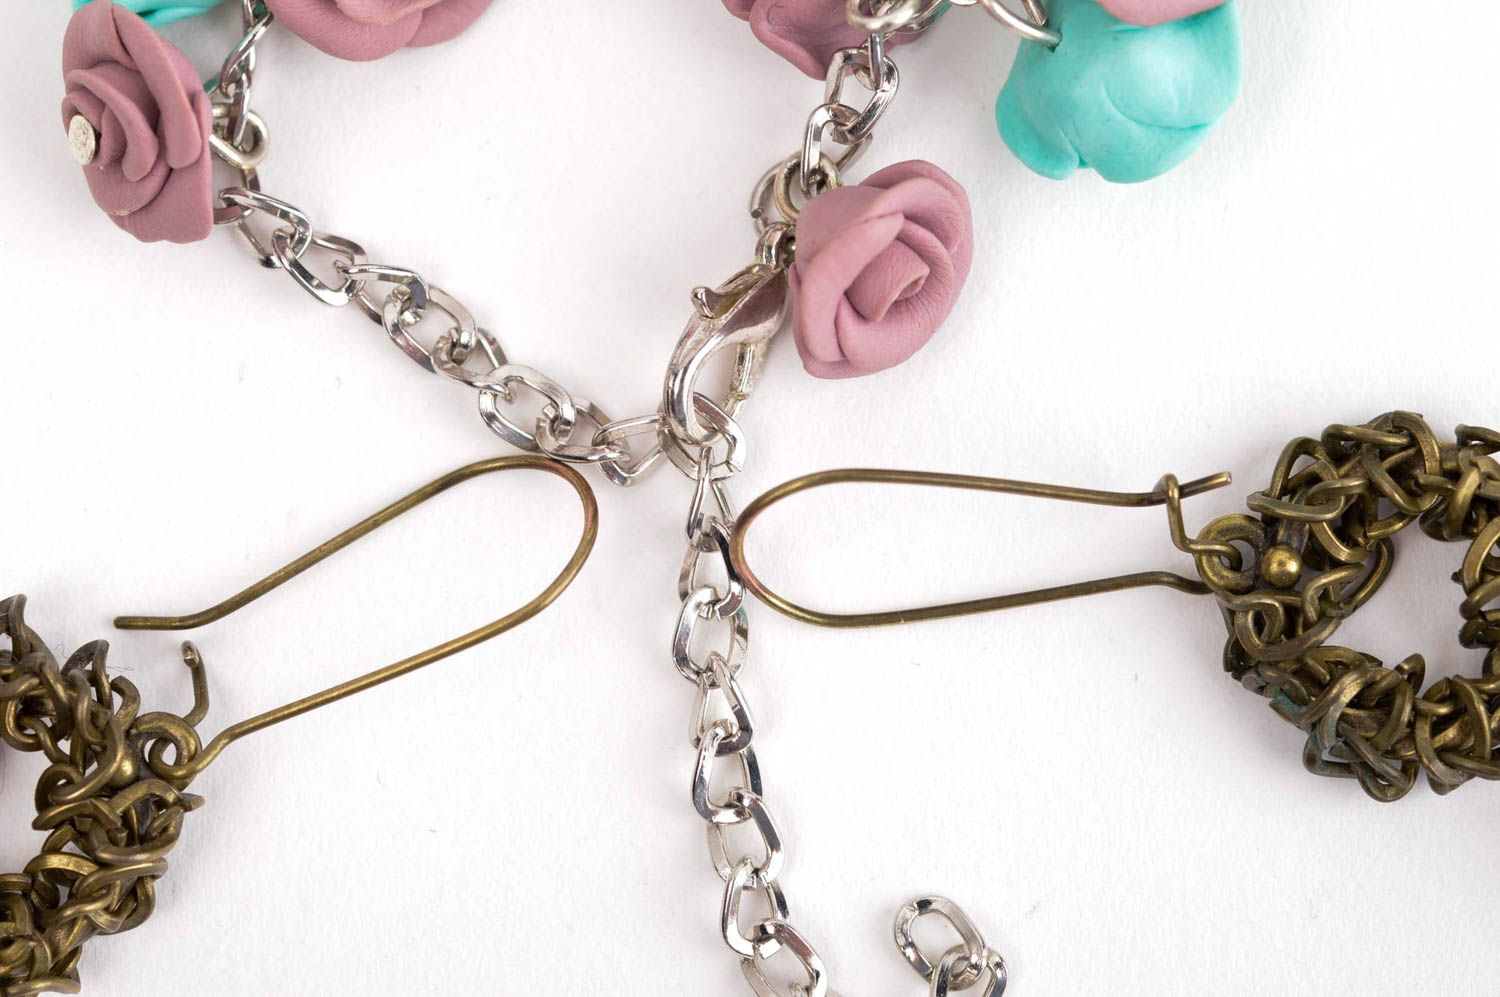 Handmade earrings with flowers designer bracelet gift ideas unusual gift for her photo 5